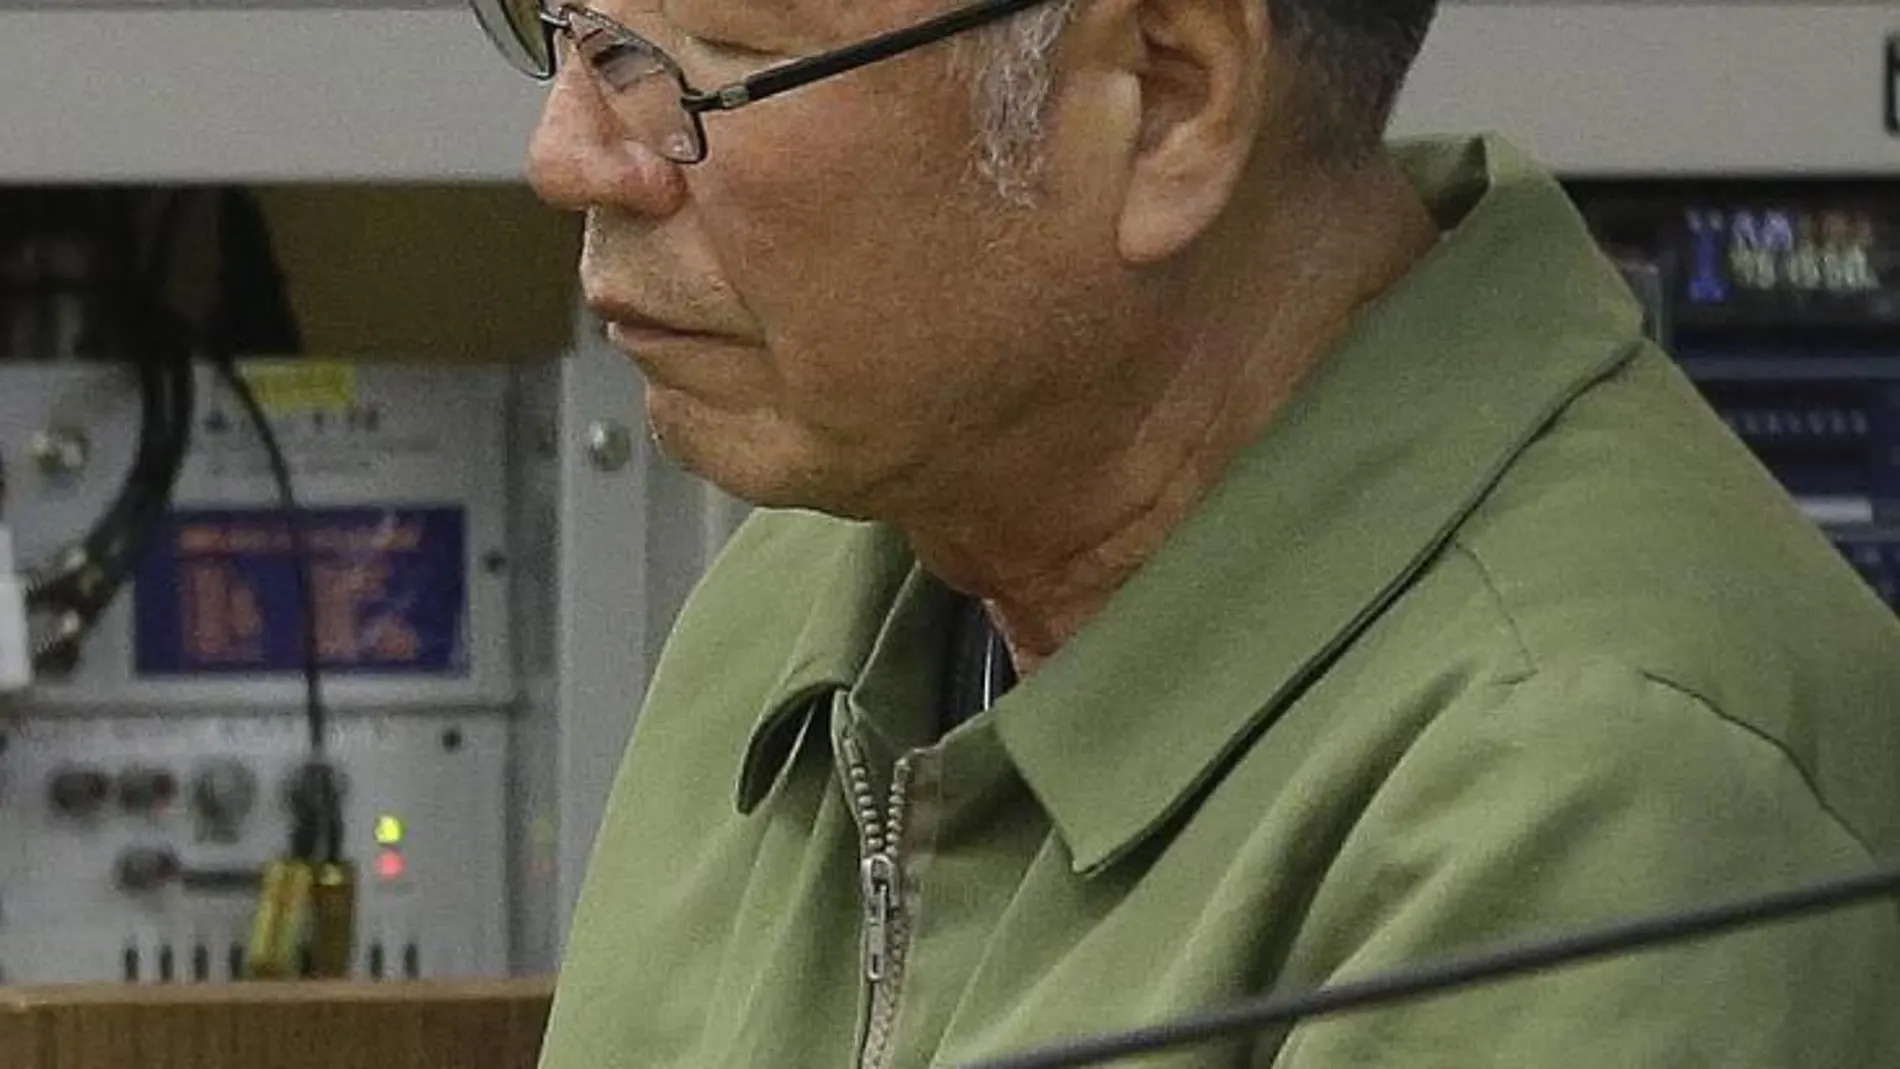 El excapitán del ferri que se hundió en Sewol, Lee Joon-seok, aparece durante la lectura de la sentencia